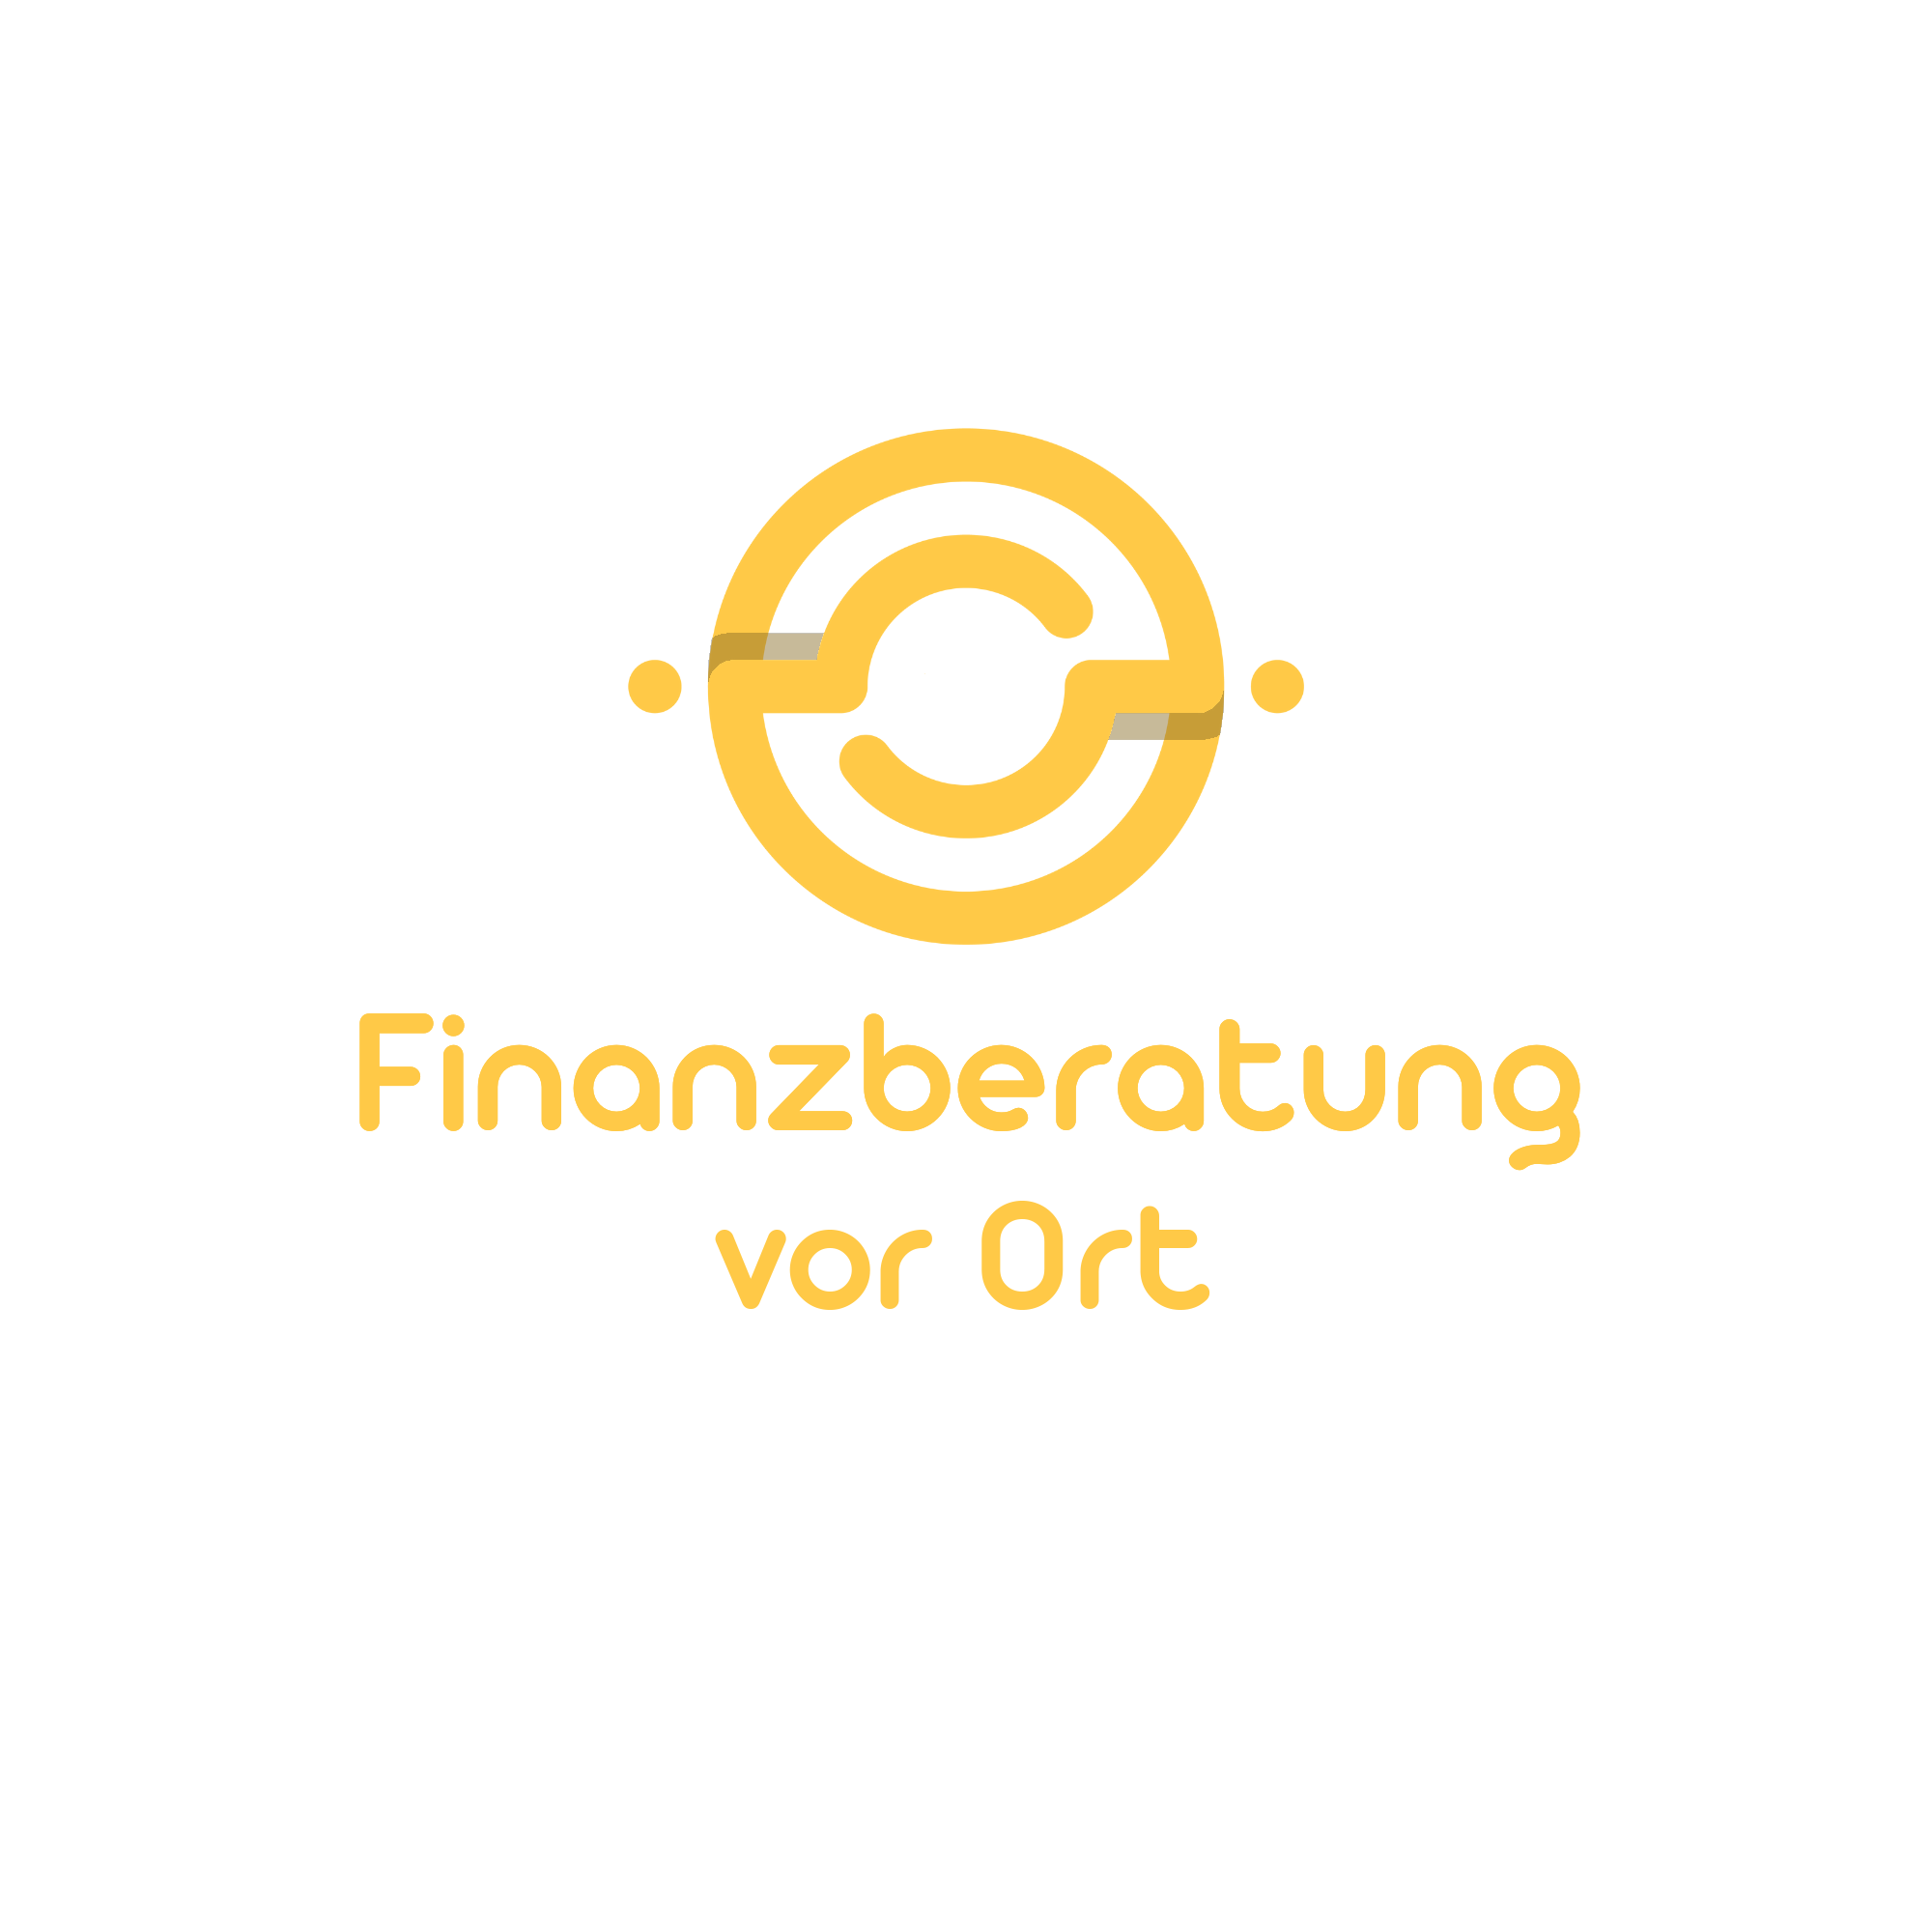 Finanzberatung vor Ort in Düren - Logo